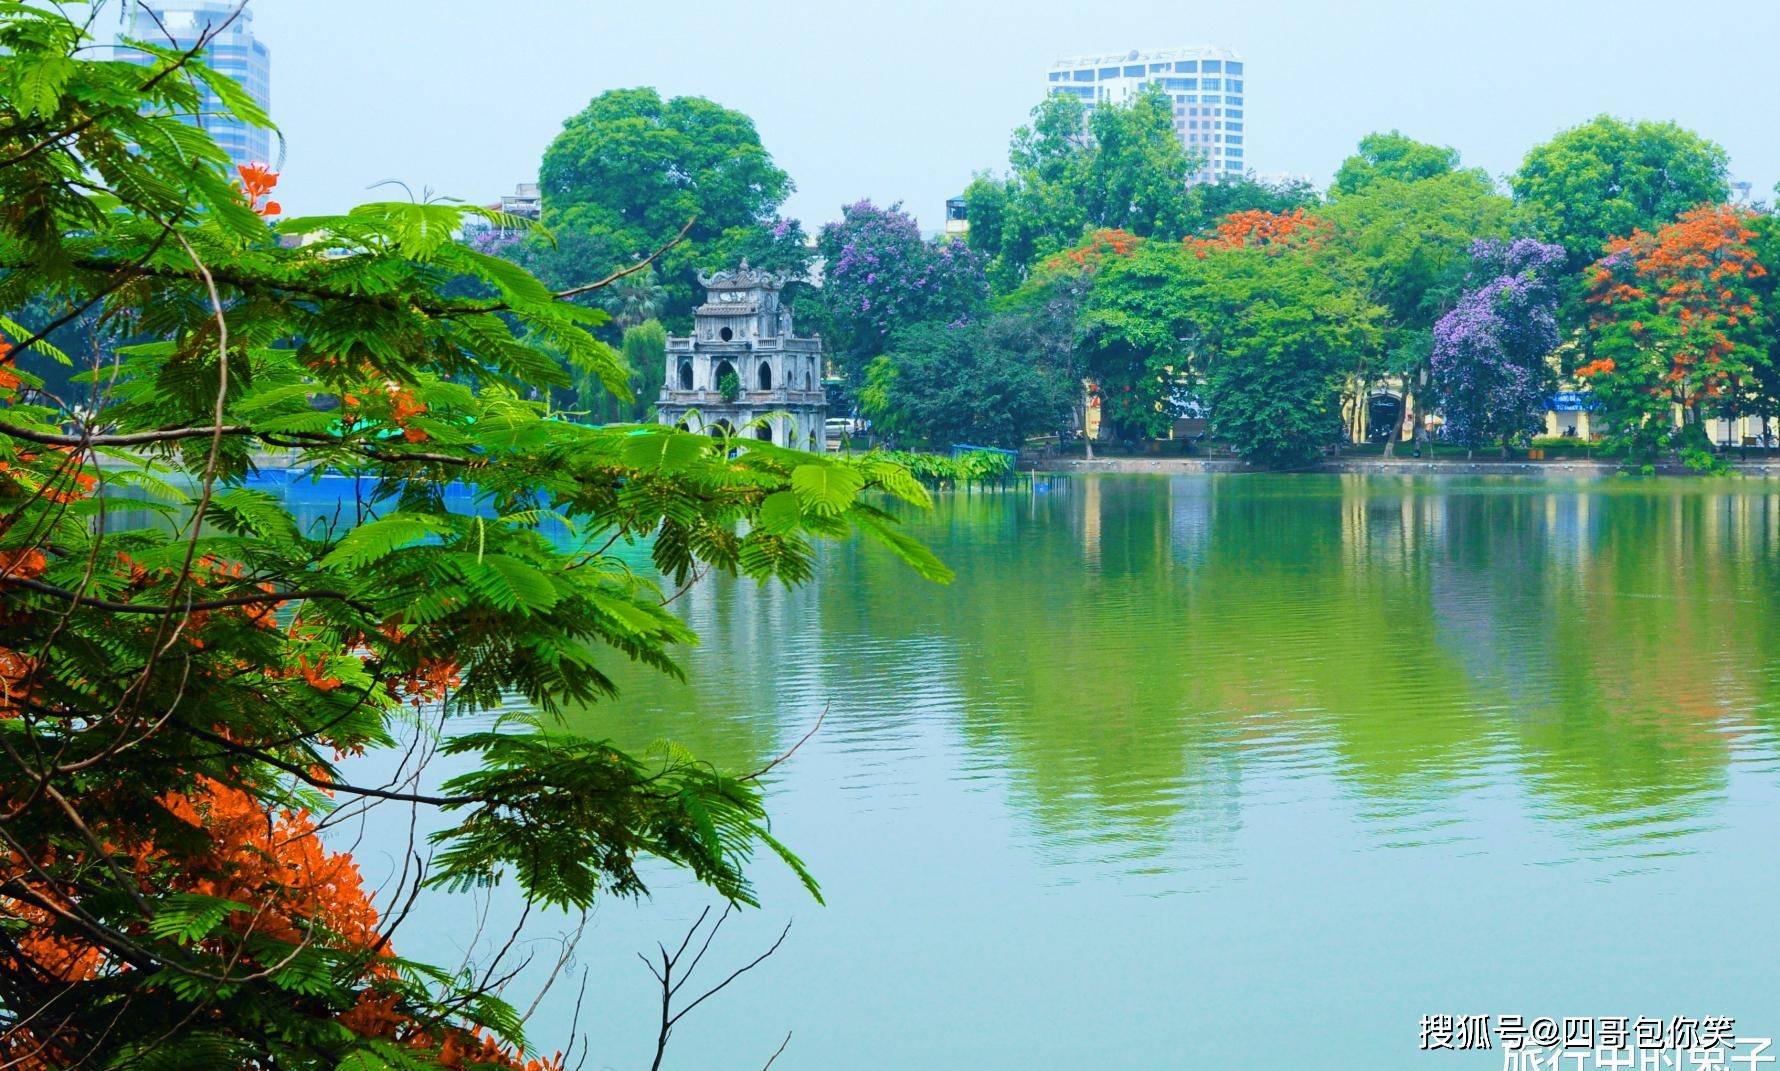 原创越南还剑湖的优美风景大自然的巧夺天工游客心之所向